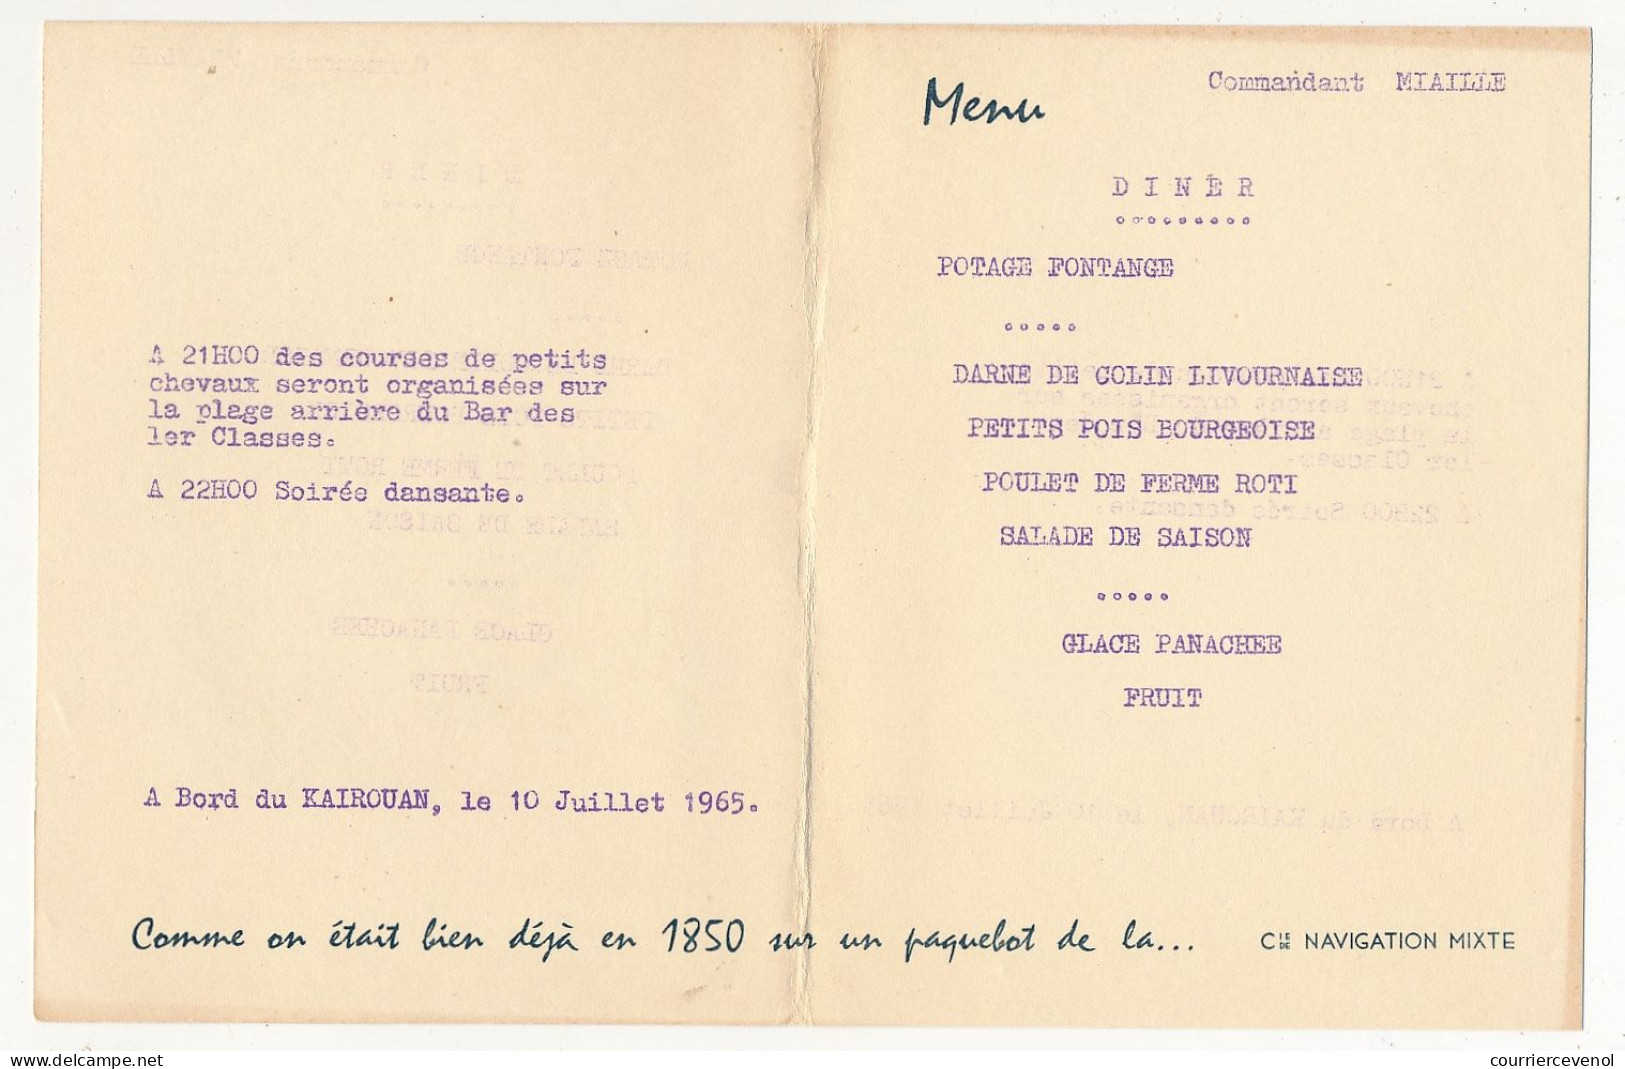 Menu Cie De Navigation Mixte - Commandant Miaille - KAIROUAN 10 Juillet 1965 - Dessin De Chapelet : La Salle à Manger - Menükarten